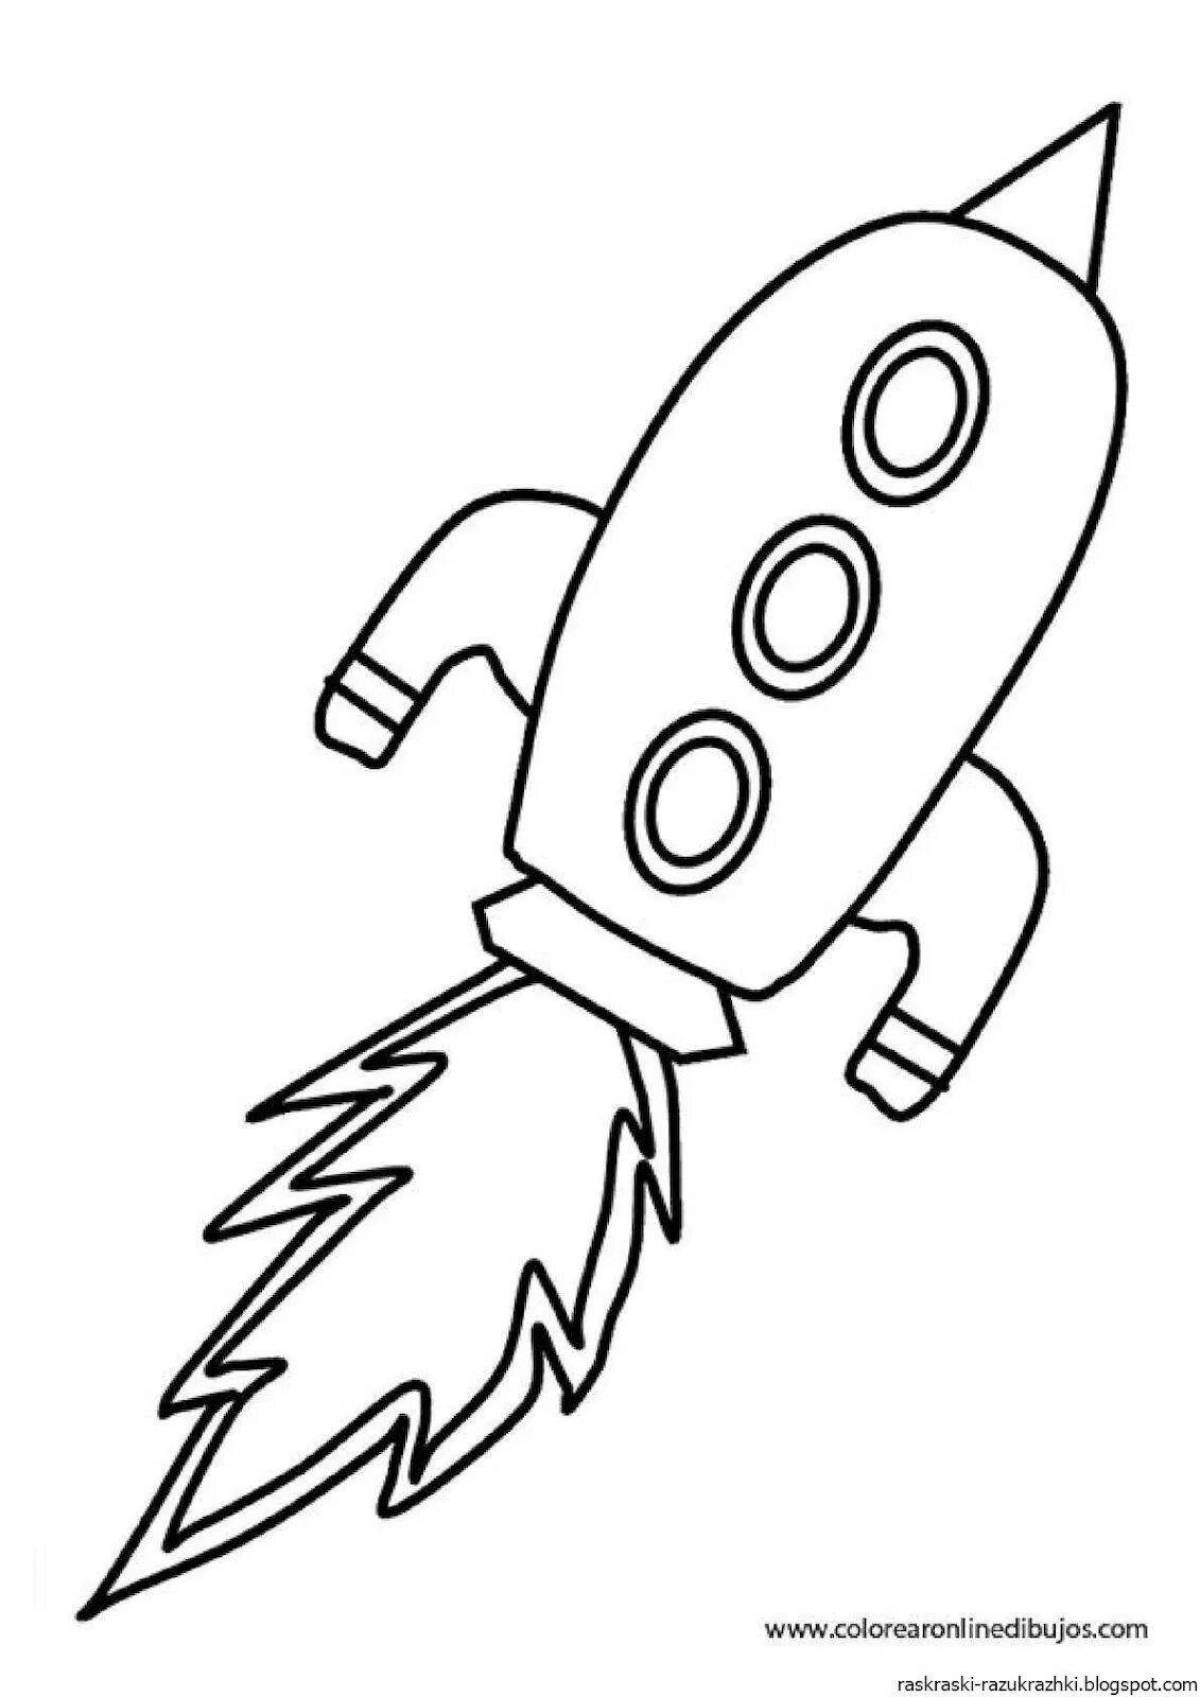 Ракета рисунок для детей 5 лет. Ракета раскраска. Ракета закраска. Ракета раскраска для детей. Космическая ракета раскраска.